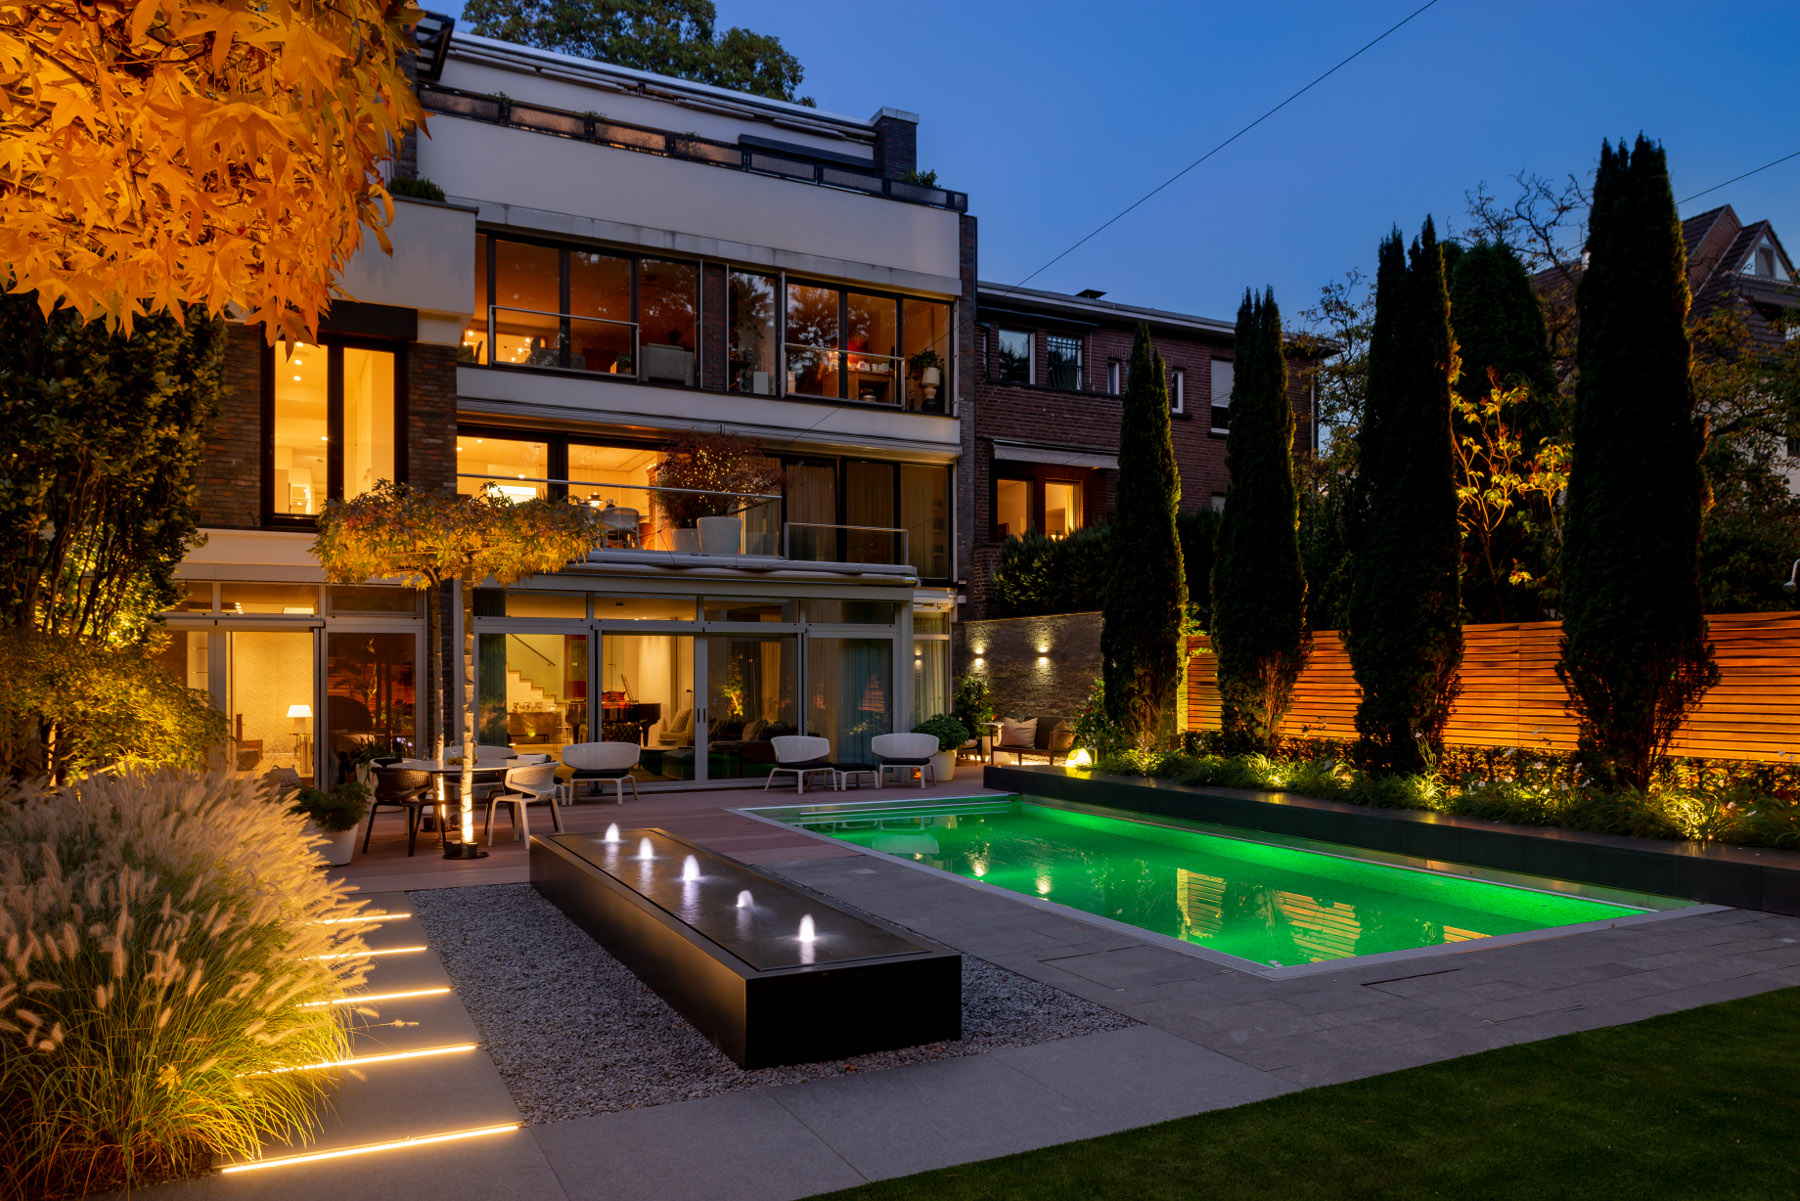 Ergebnis einer Lichtplanung: Garten mit Pool mit atmosphärischer Beleuchtung in den Abendstunden